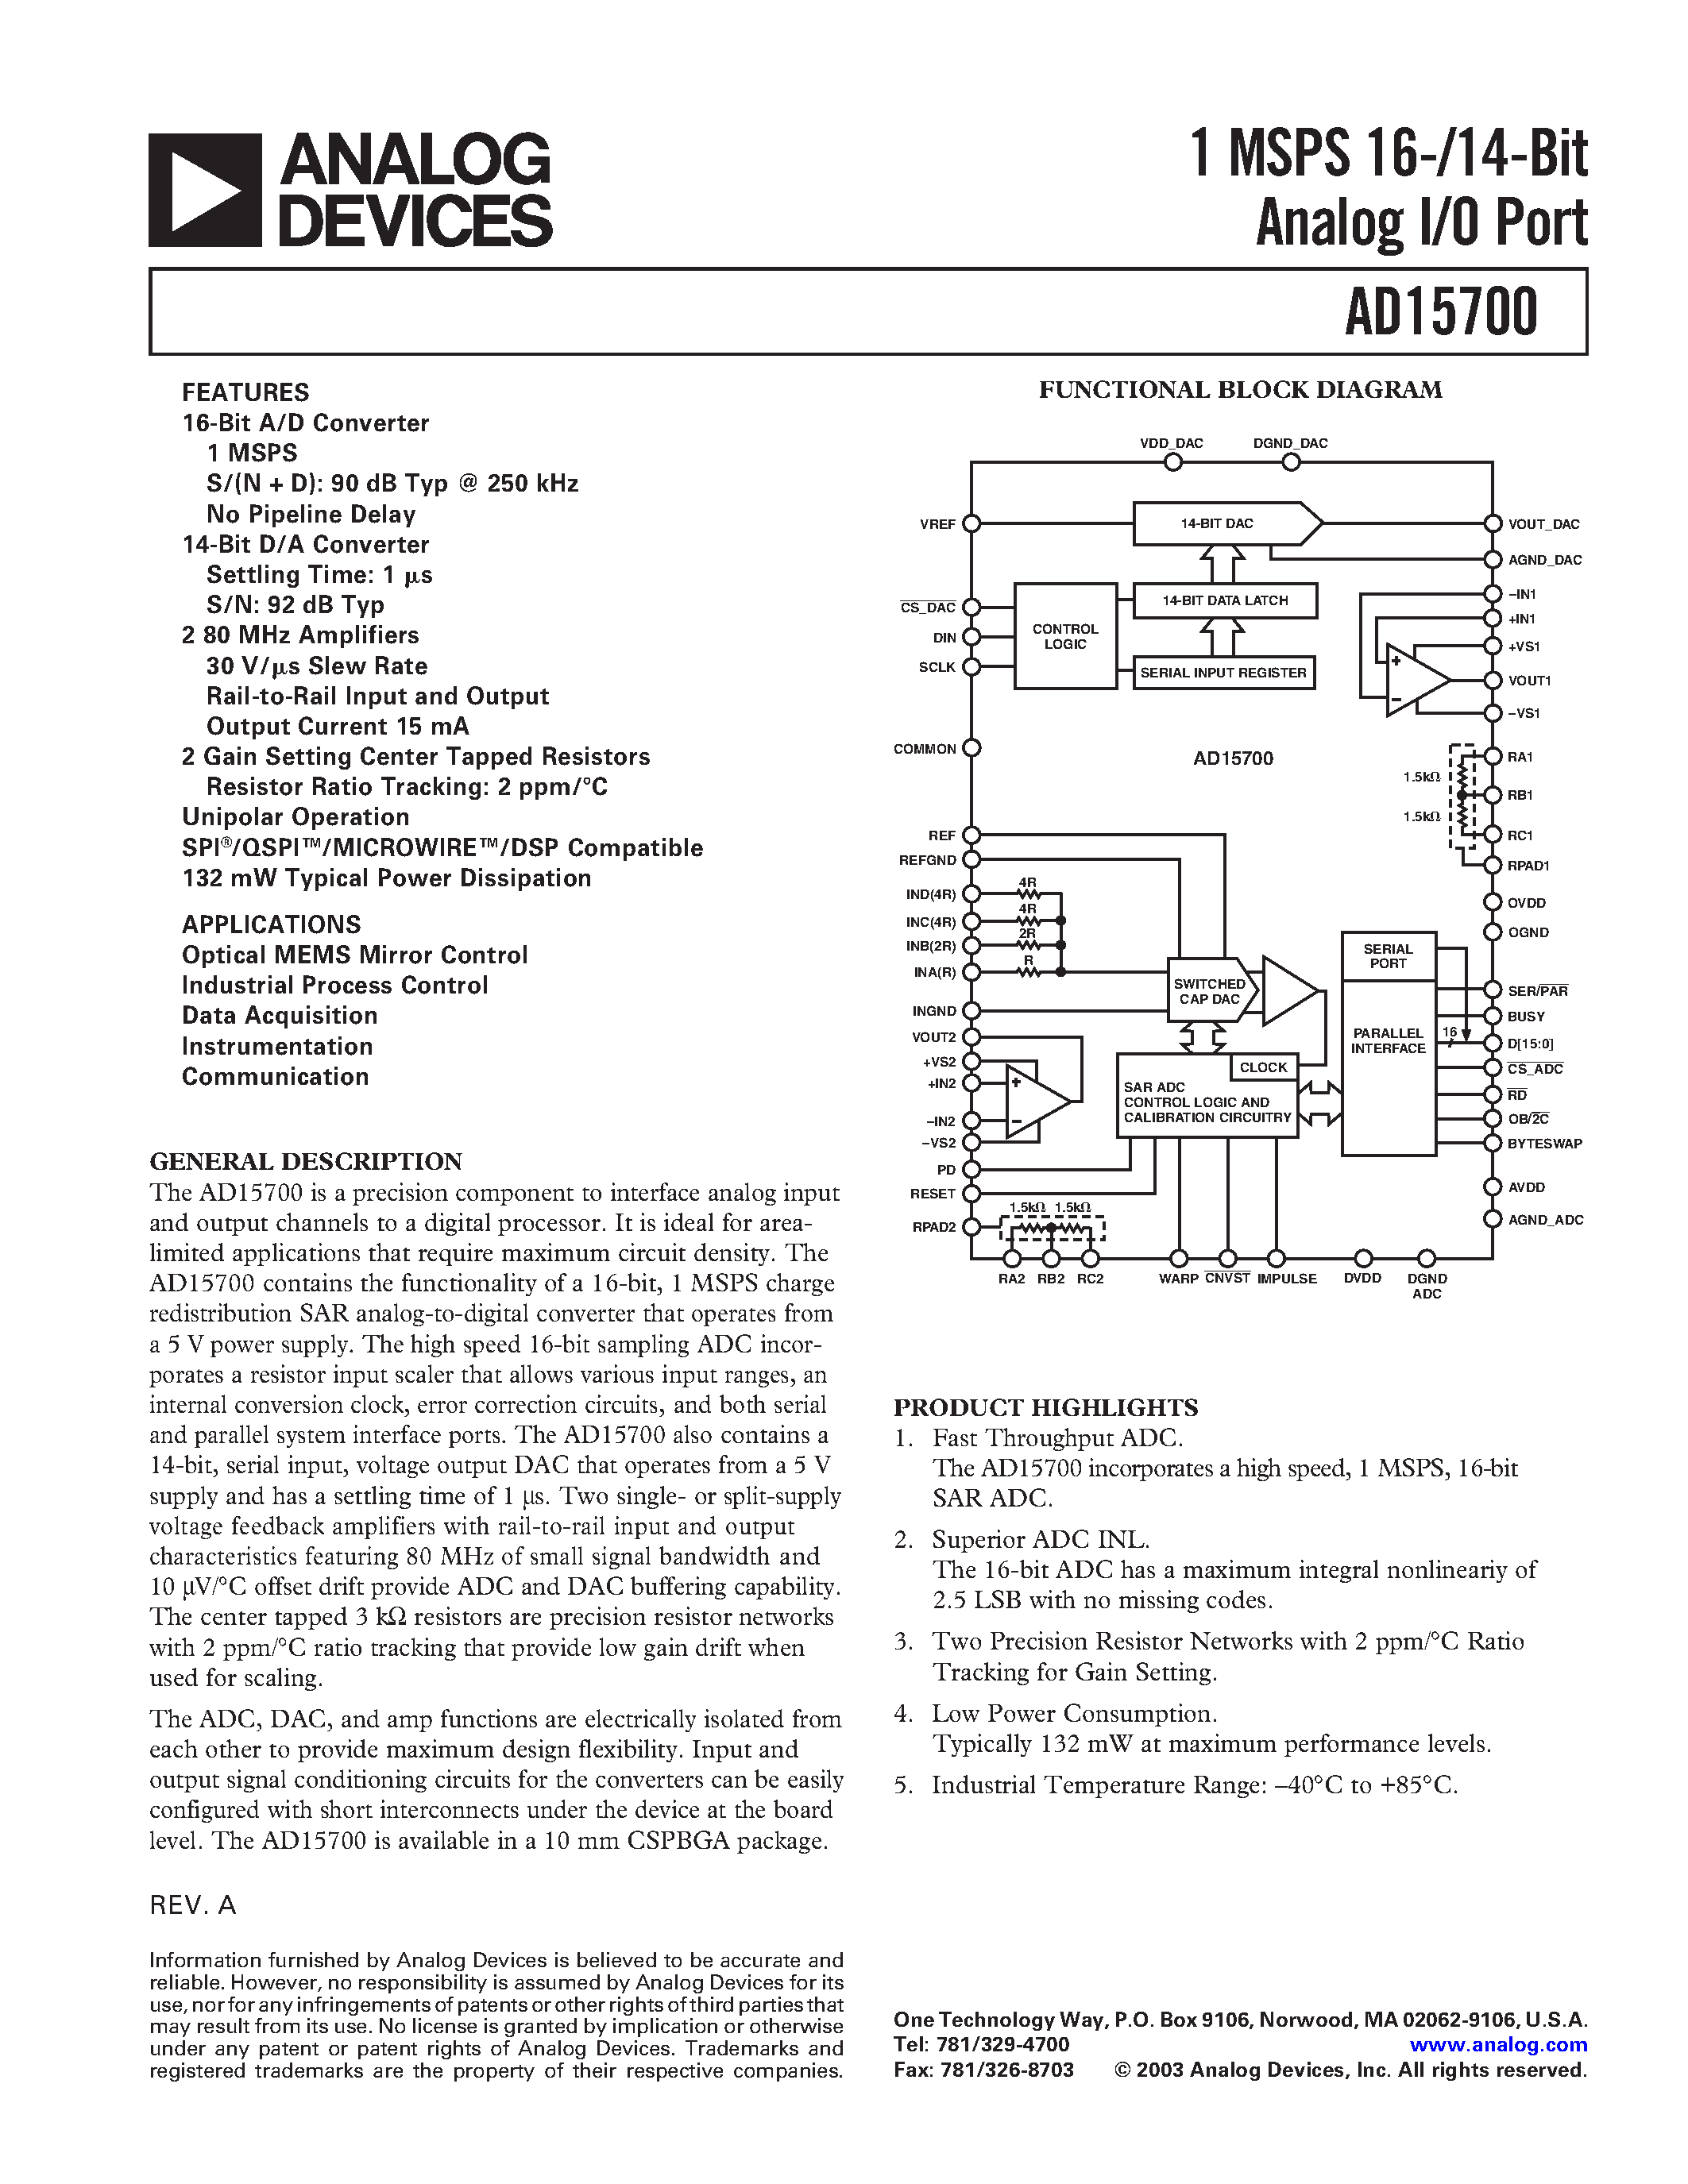 Даташит AD15700 - 1 MSPS 16-/14-Bit Analog I/O Port страница 1